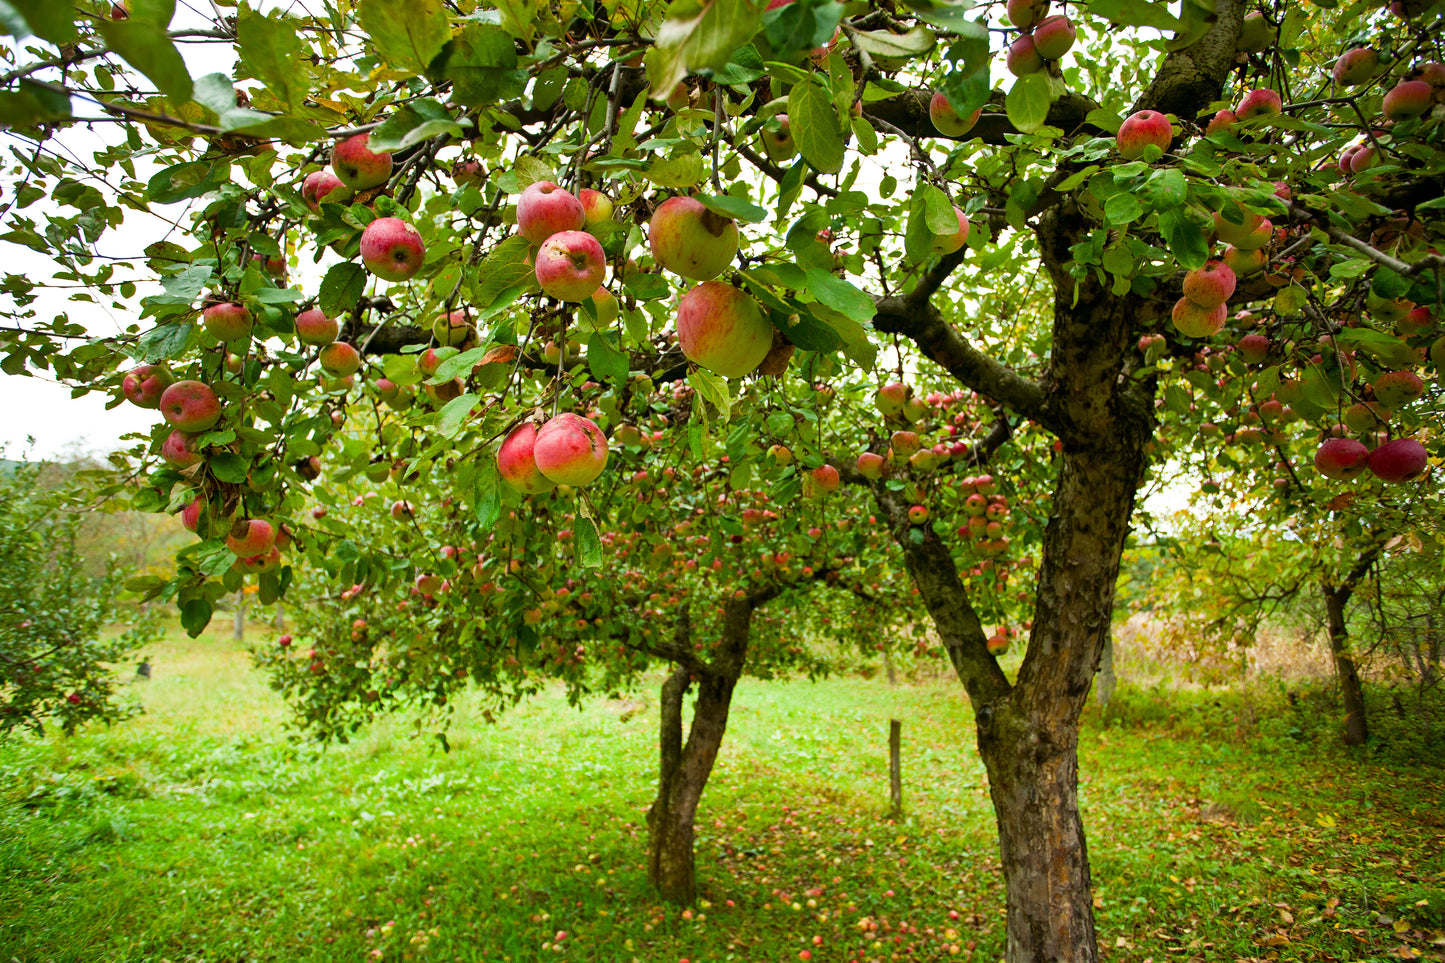 Apple Tree Fertilizer 5lbs by Old Cobblers Farm